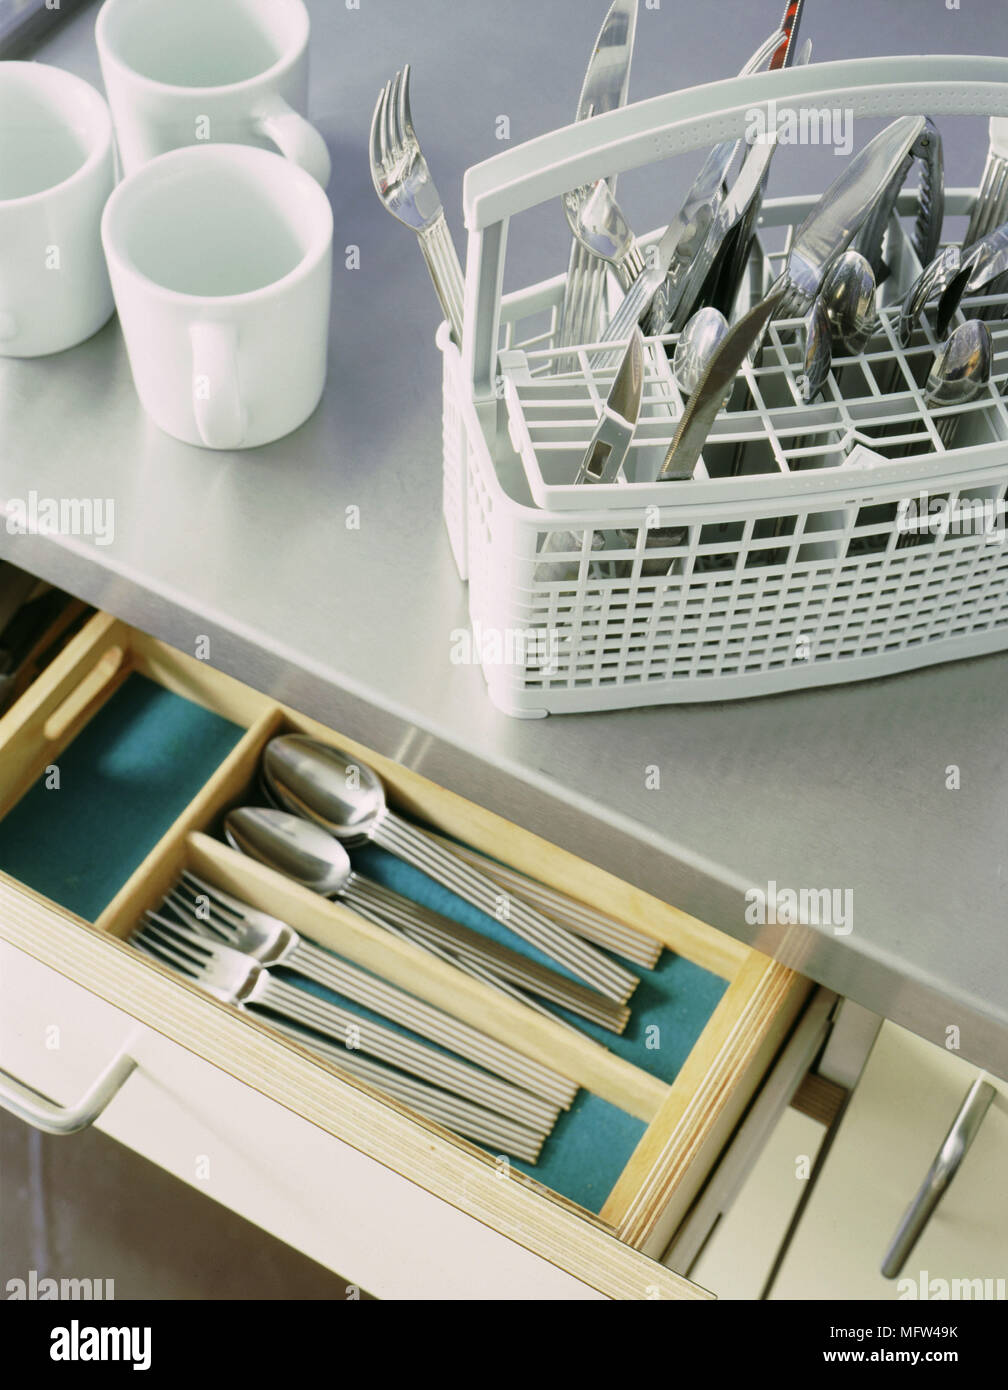 Un détail d'une cuisine moderne de travail en acier inoxydable haut de  couverts en plastique panier lave-vaisselle à tiroir ouvert trois tasses  blanc Photo Stock - Alamy